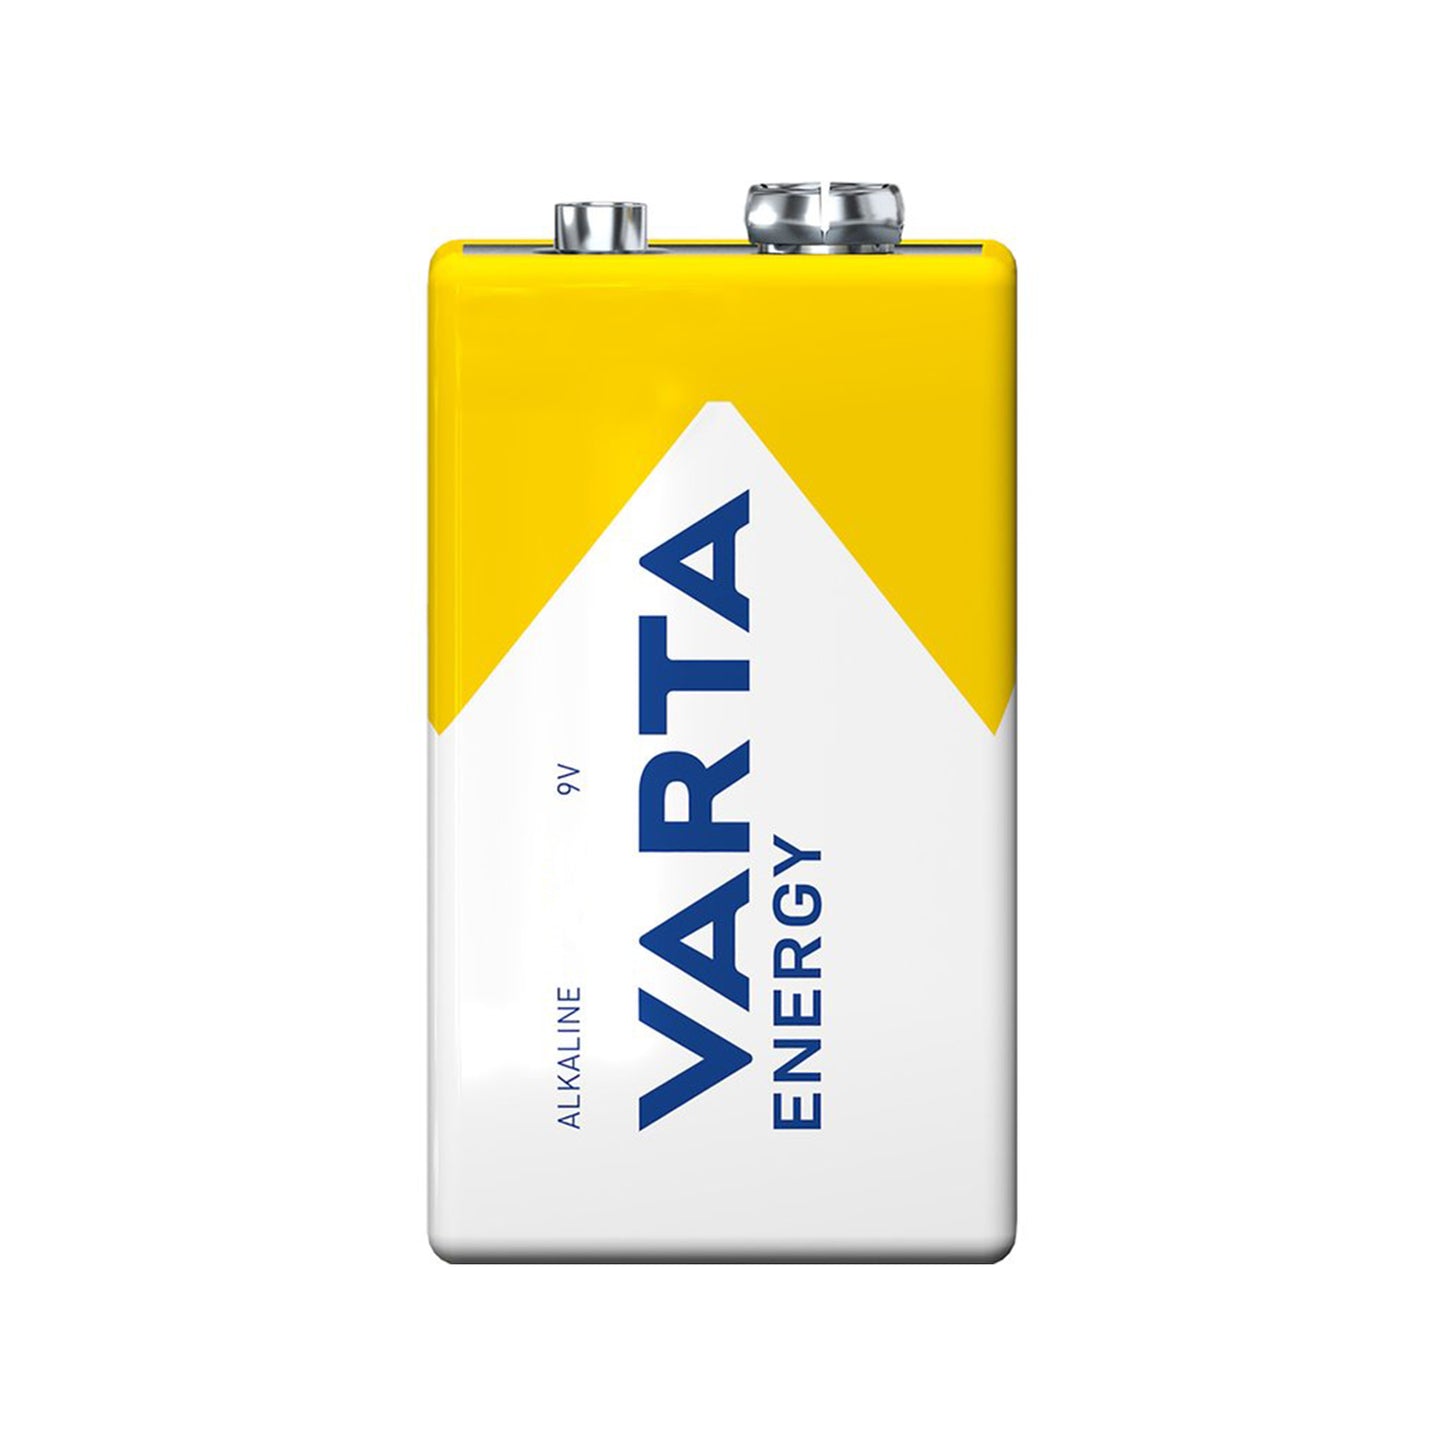 VARTA Varta Energy 9V alkaline battery type 4122, long-lasting energy